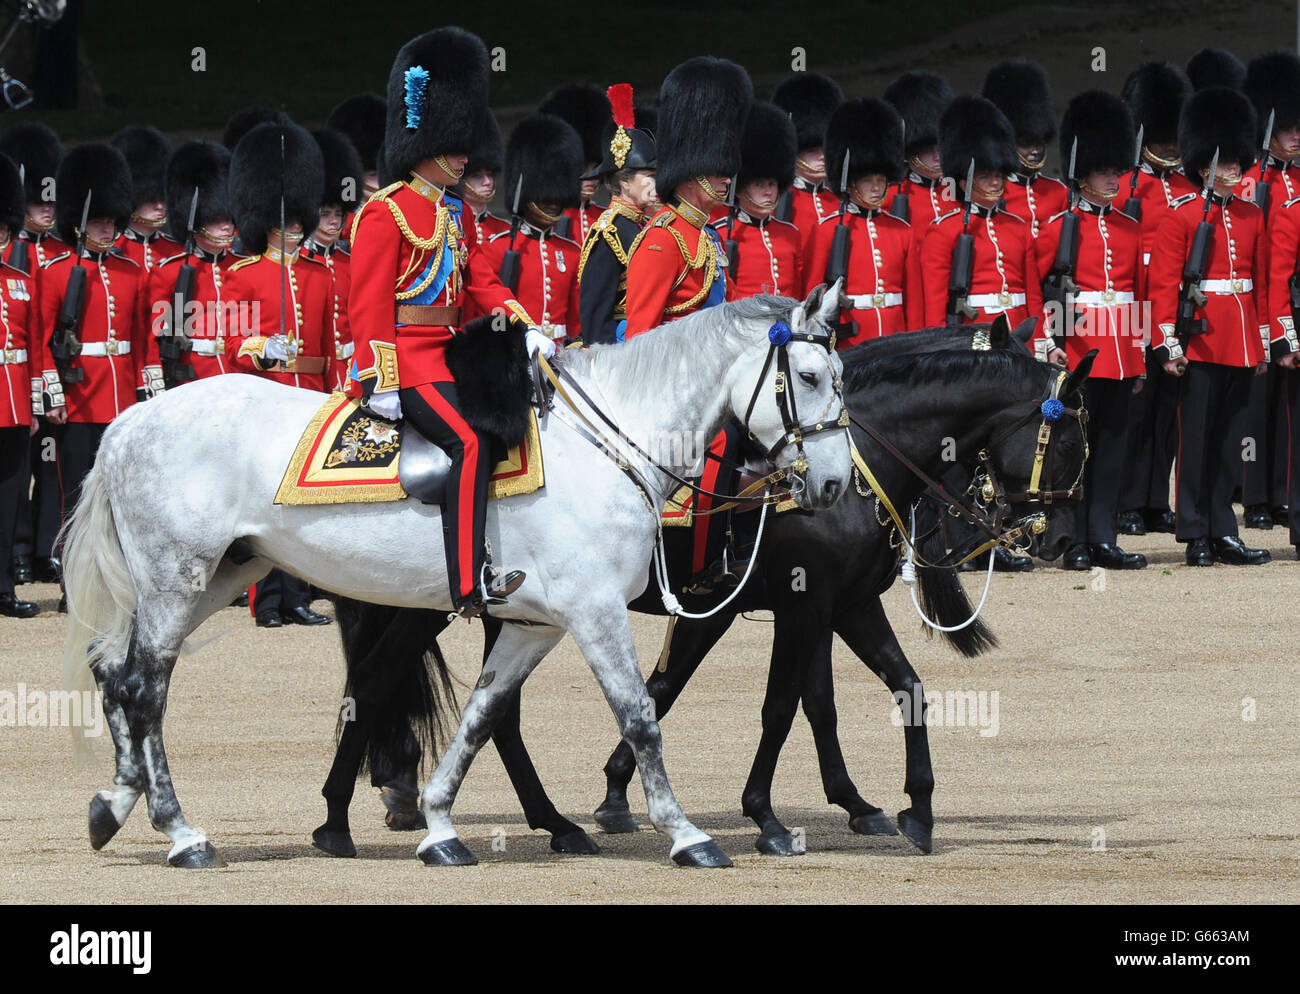 Le duc de Cambridge (à gauche) la princesse royale (au centre, partiellement cachée) et le prince de Galles (à droite) arrivent à Horse Guards Parade, Londres, pour assister à Trooping the Color. APPUYEZ SUR ASSOCIATION photo. Date de la photo: Samedi 15 juin 2013. Voir PA Story ROYAL Trooping. Le crédit photo devrait se lire : Anthony Devlin/PA Wire Banque D'Images